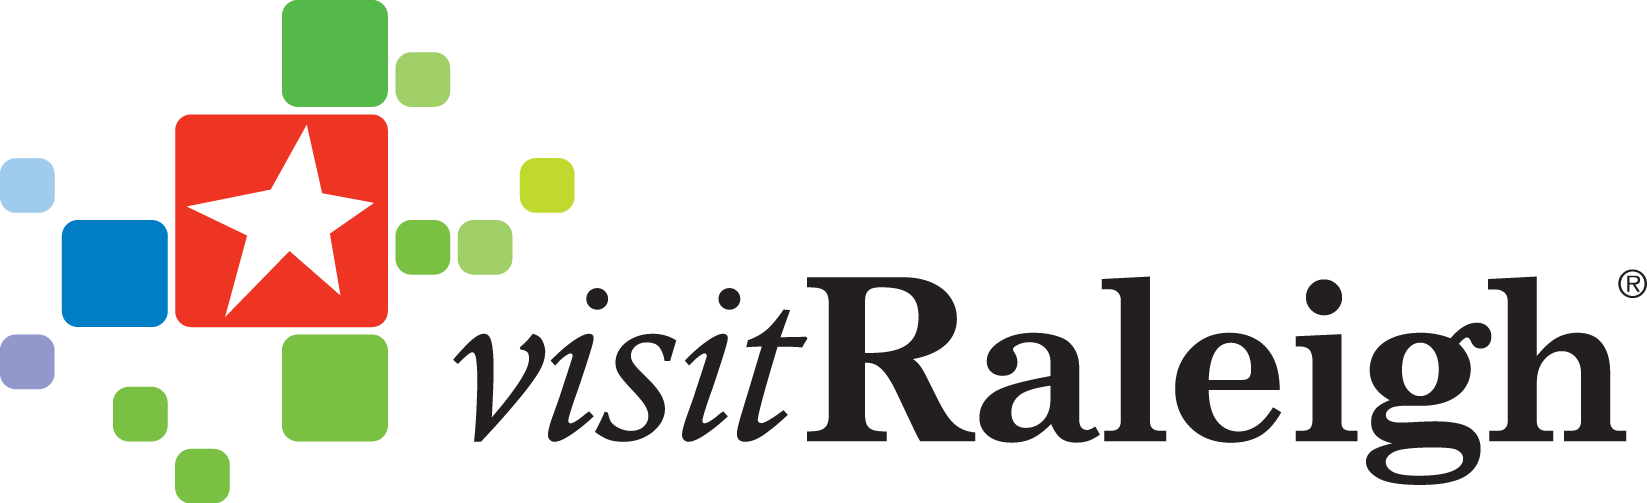 visit raleigh logo